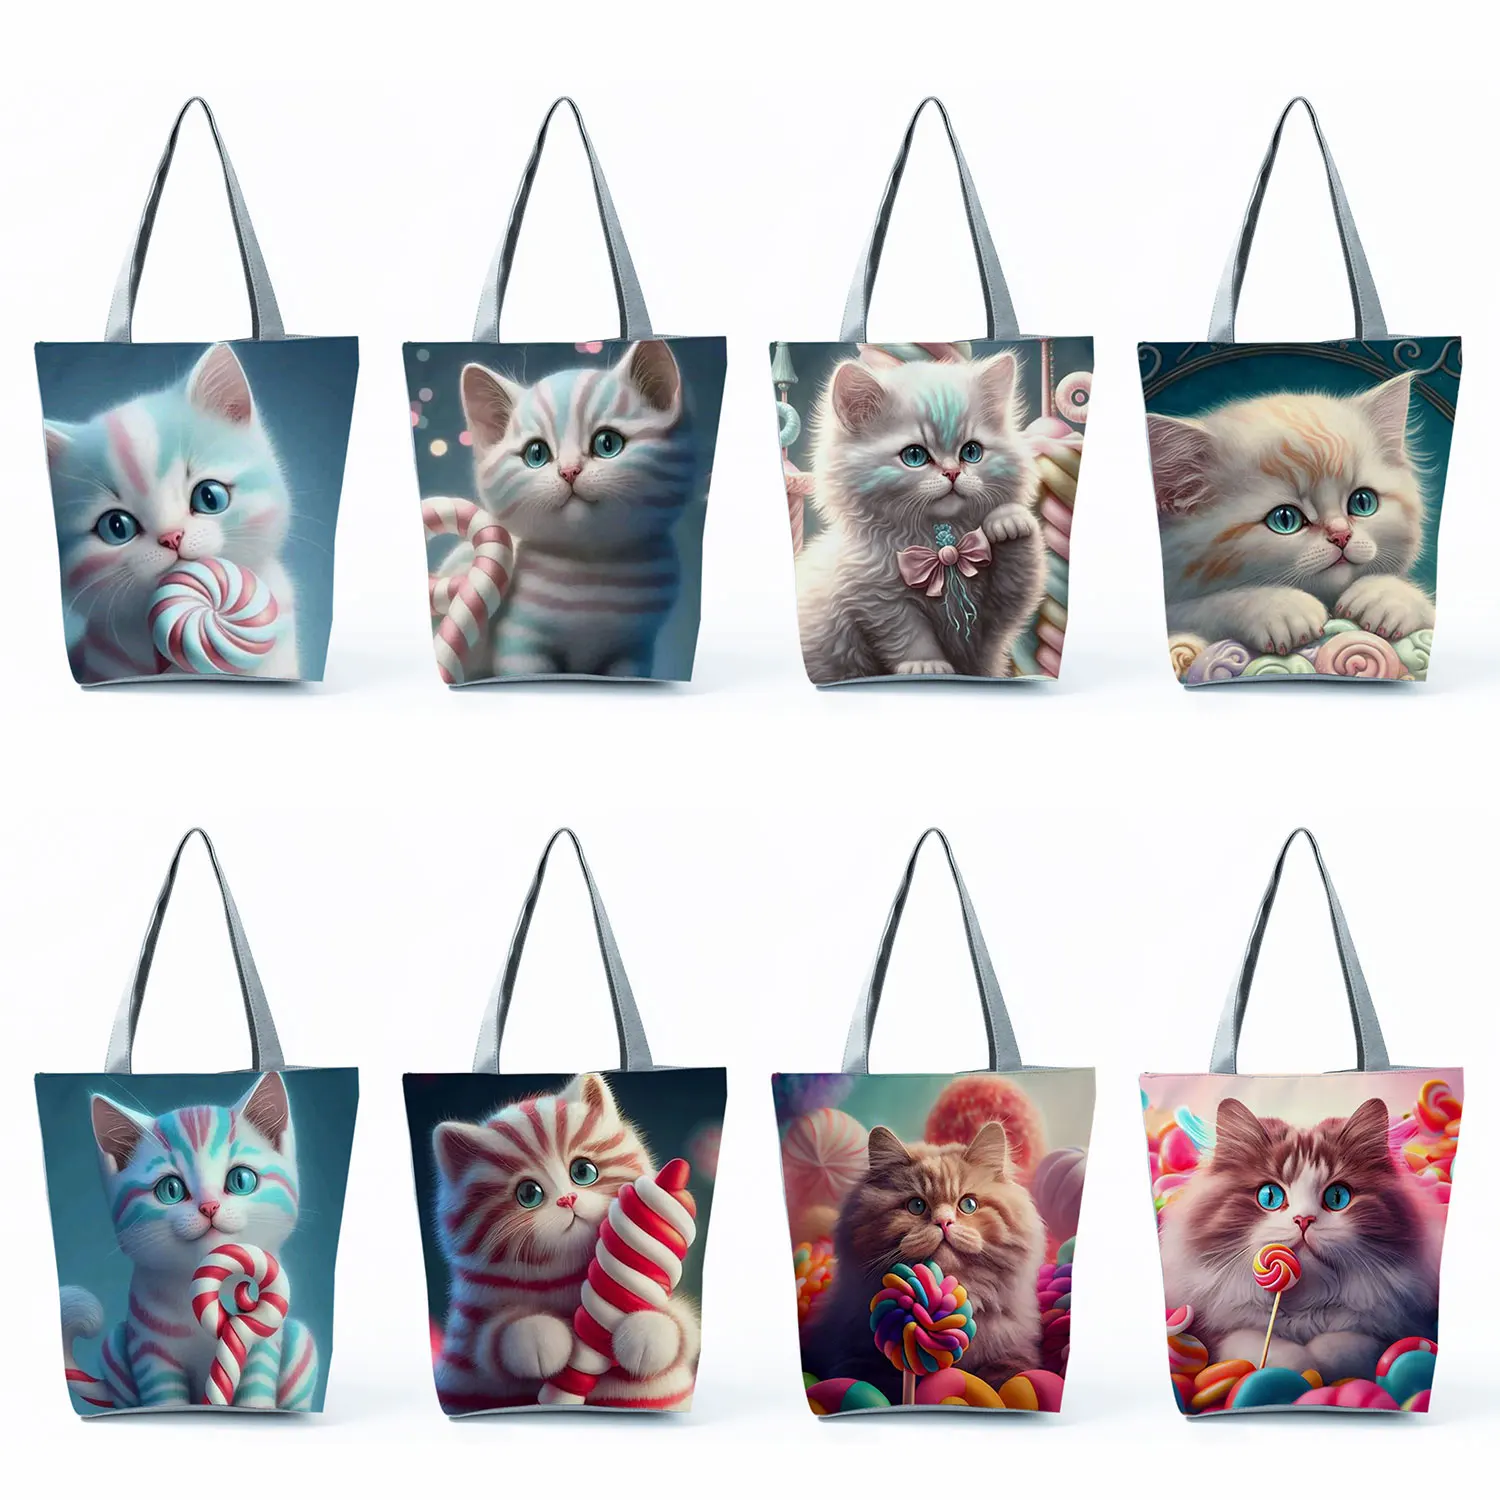 

Экологичные многоразовые сумки для покупок, вместительные женские пляжные сумки-тоуты, Мультяшные сумки с милым рисунком кошки, модные сумки с милым рисунком животных